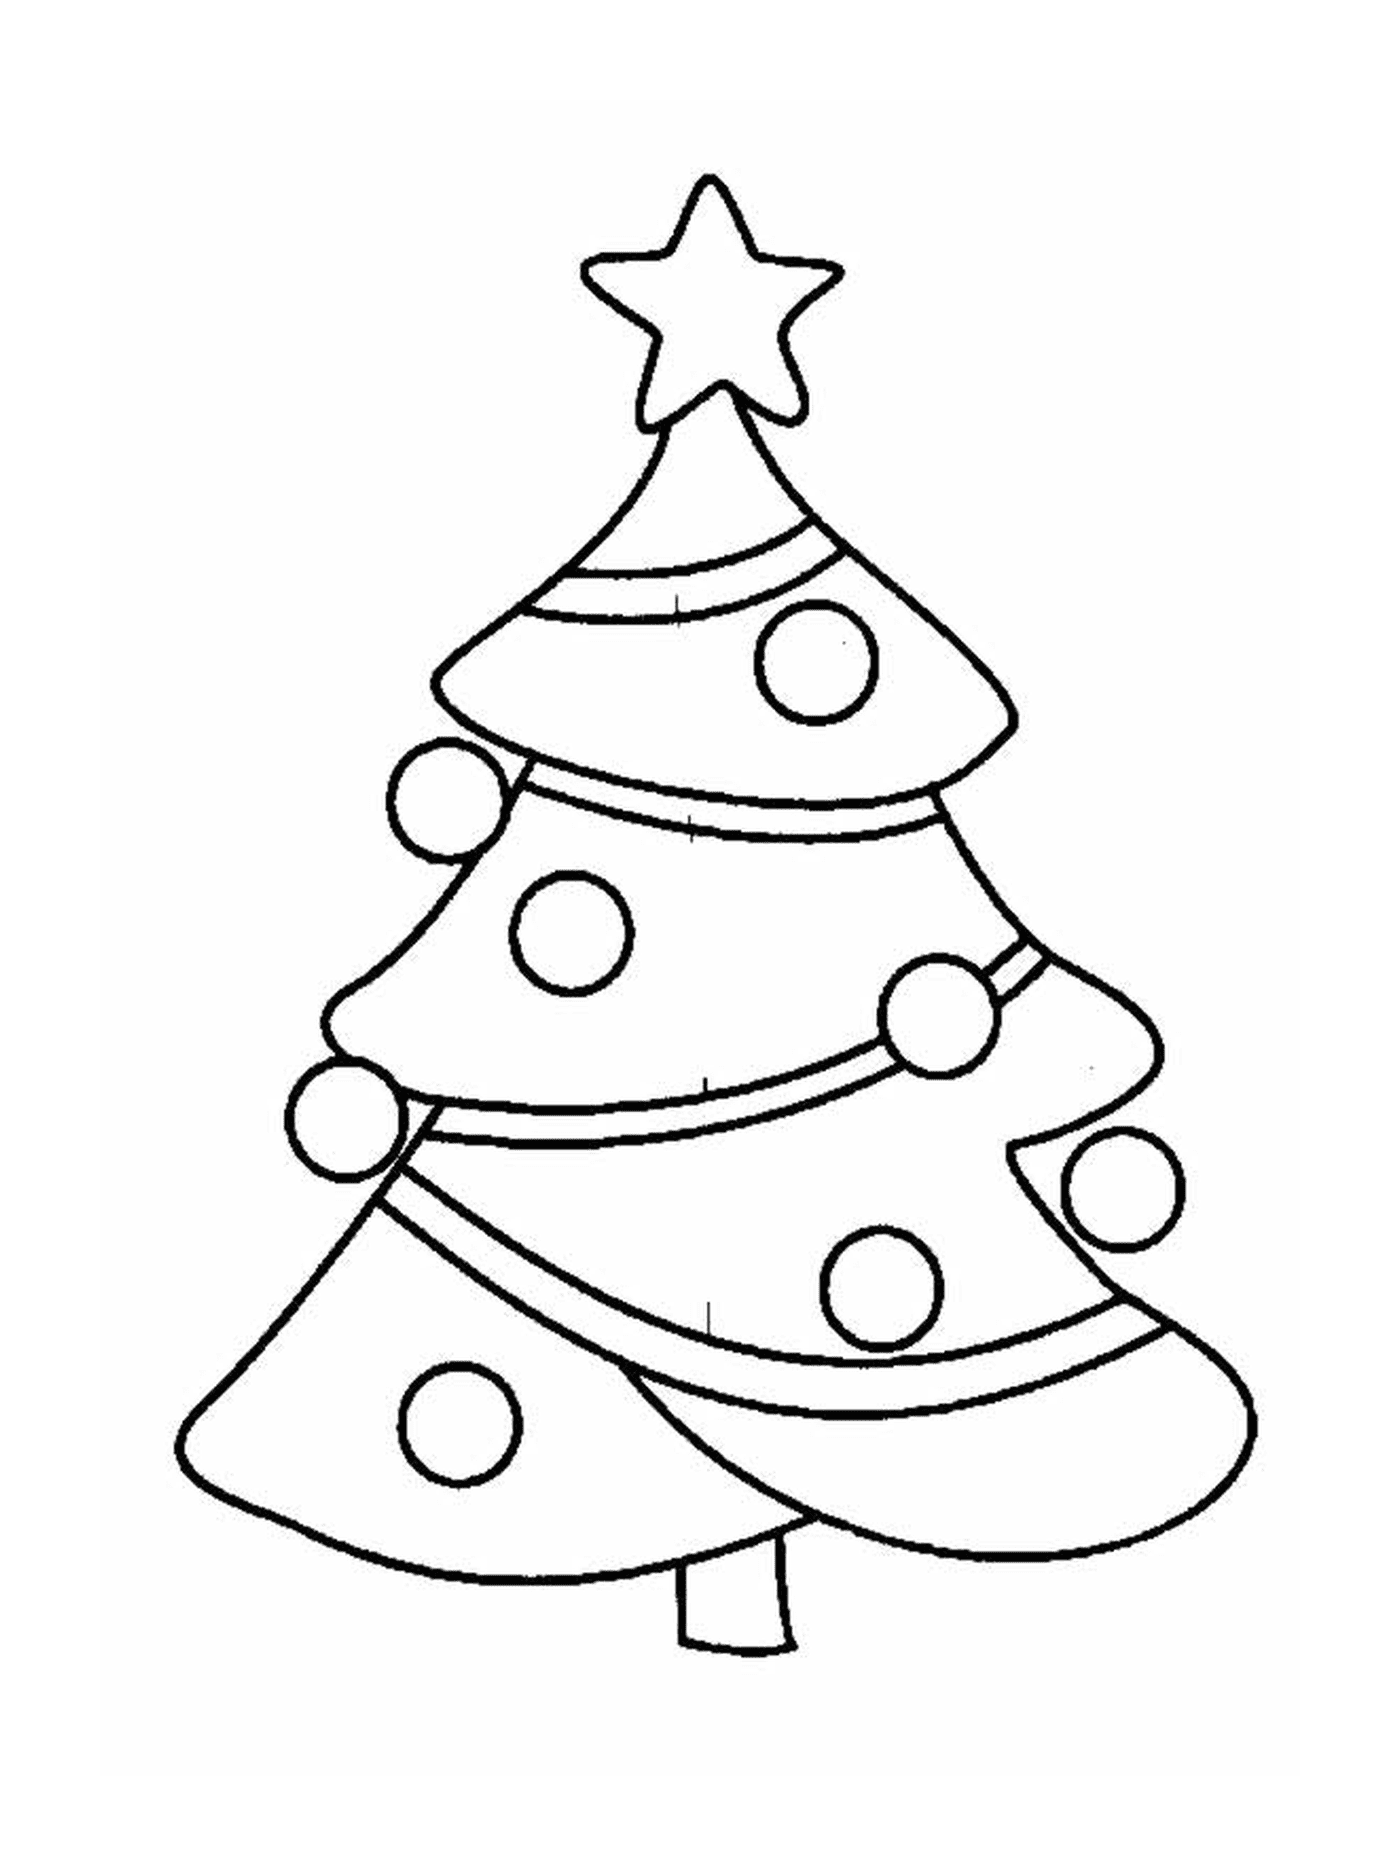  شجرة عيد الميلاد مع زينة في الأعلى 